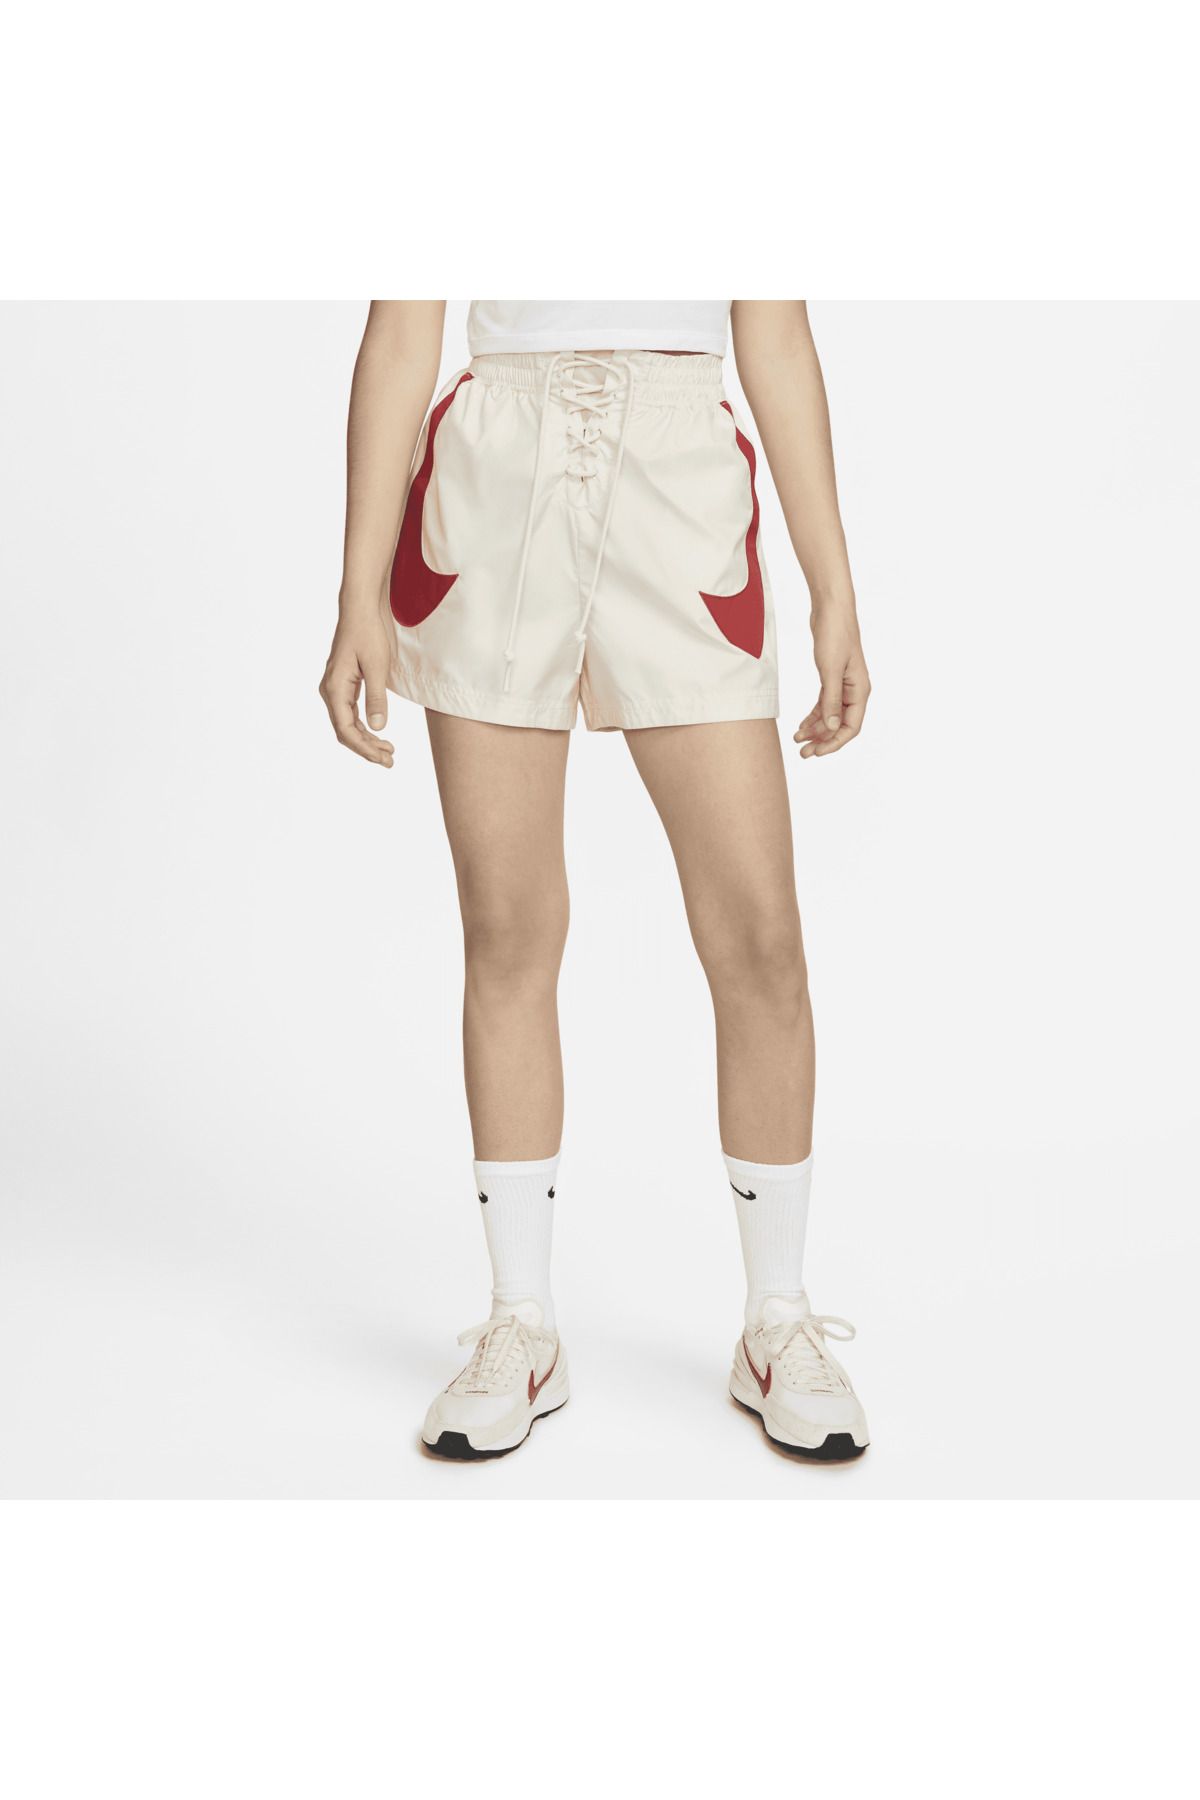 Nike Women's Sportswear Shorts In White Kadın Spor Şort